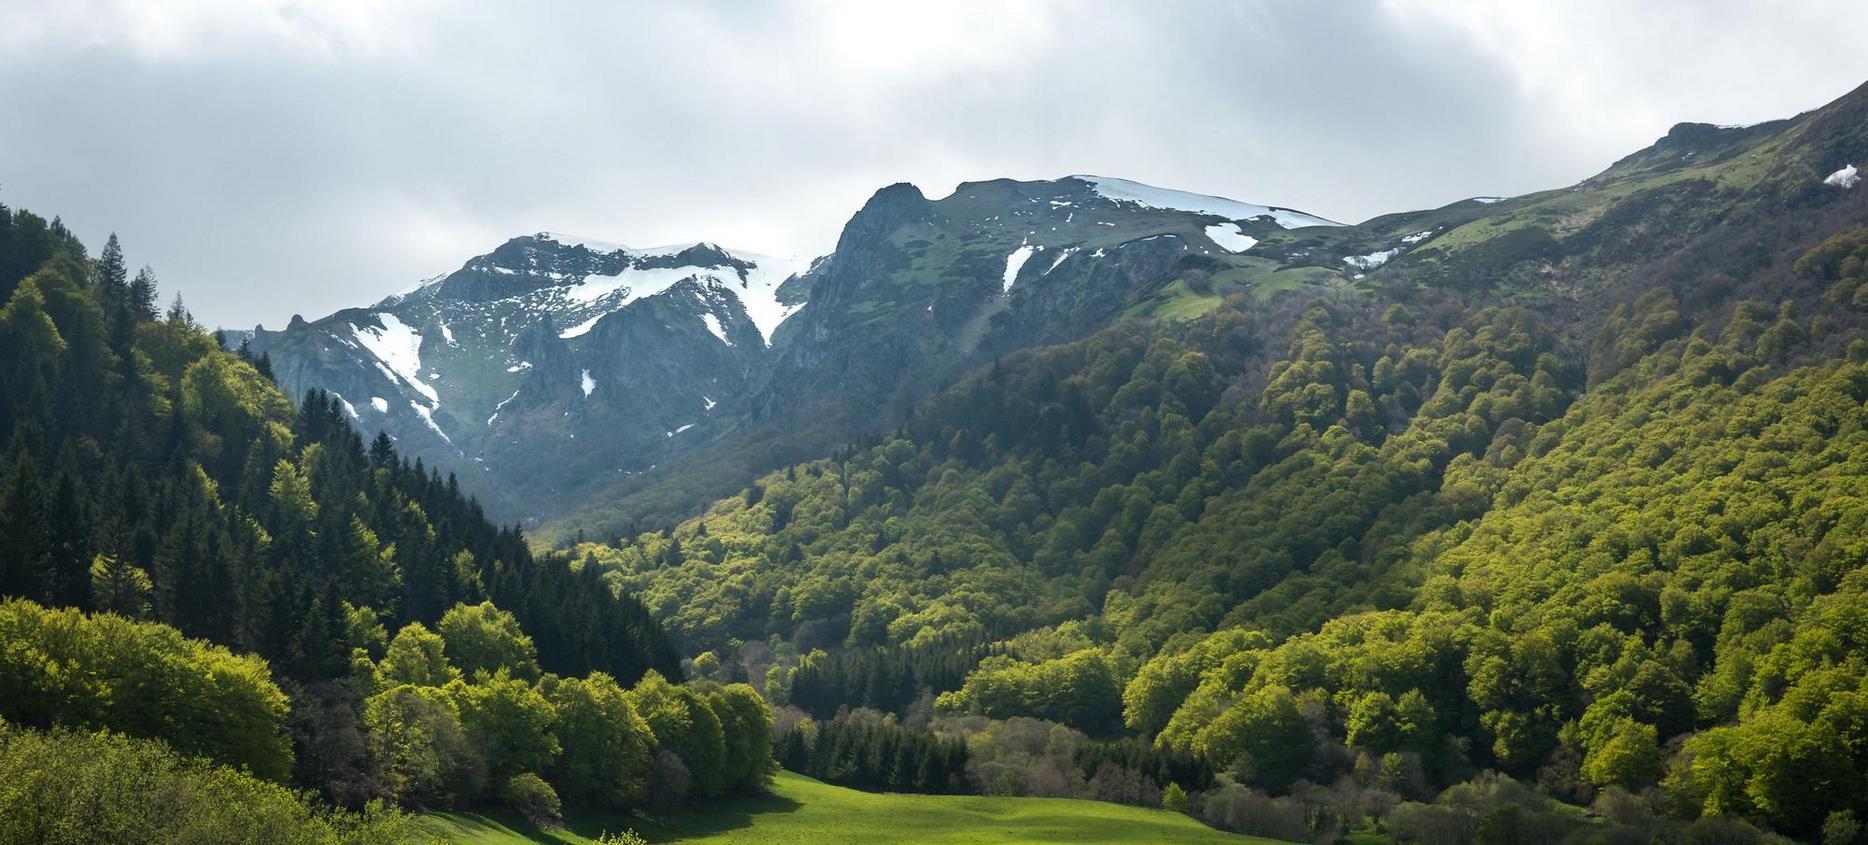 Super Besse, green landscape in the Chaudefour Valley